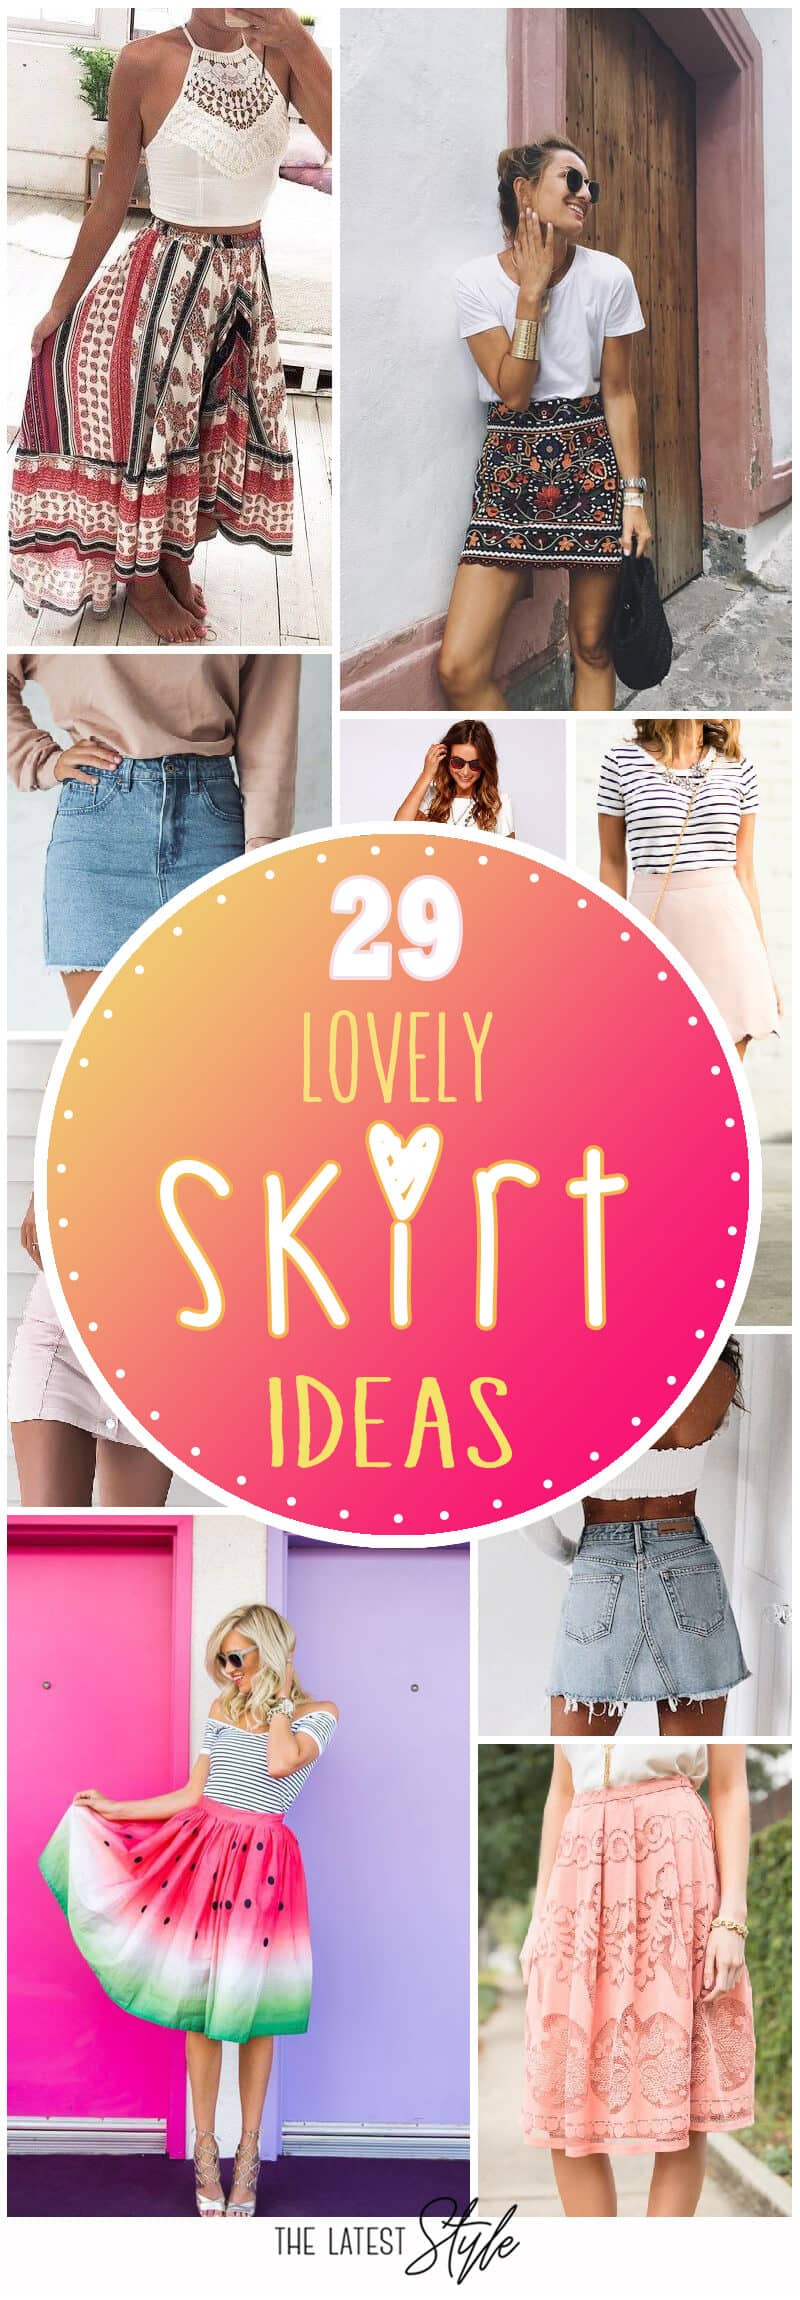 29 Lovely Skirt Ideas For This Summer